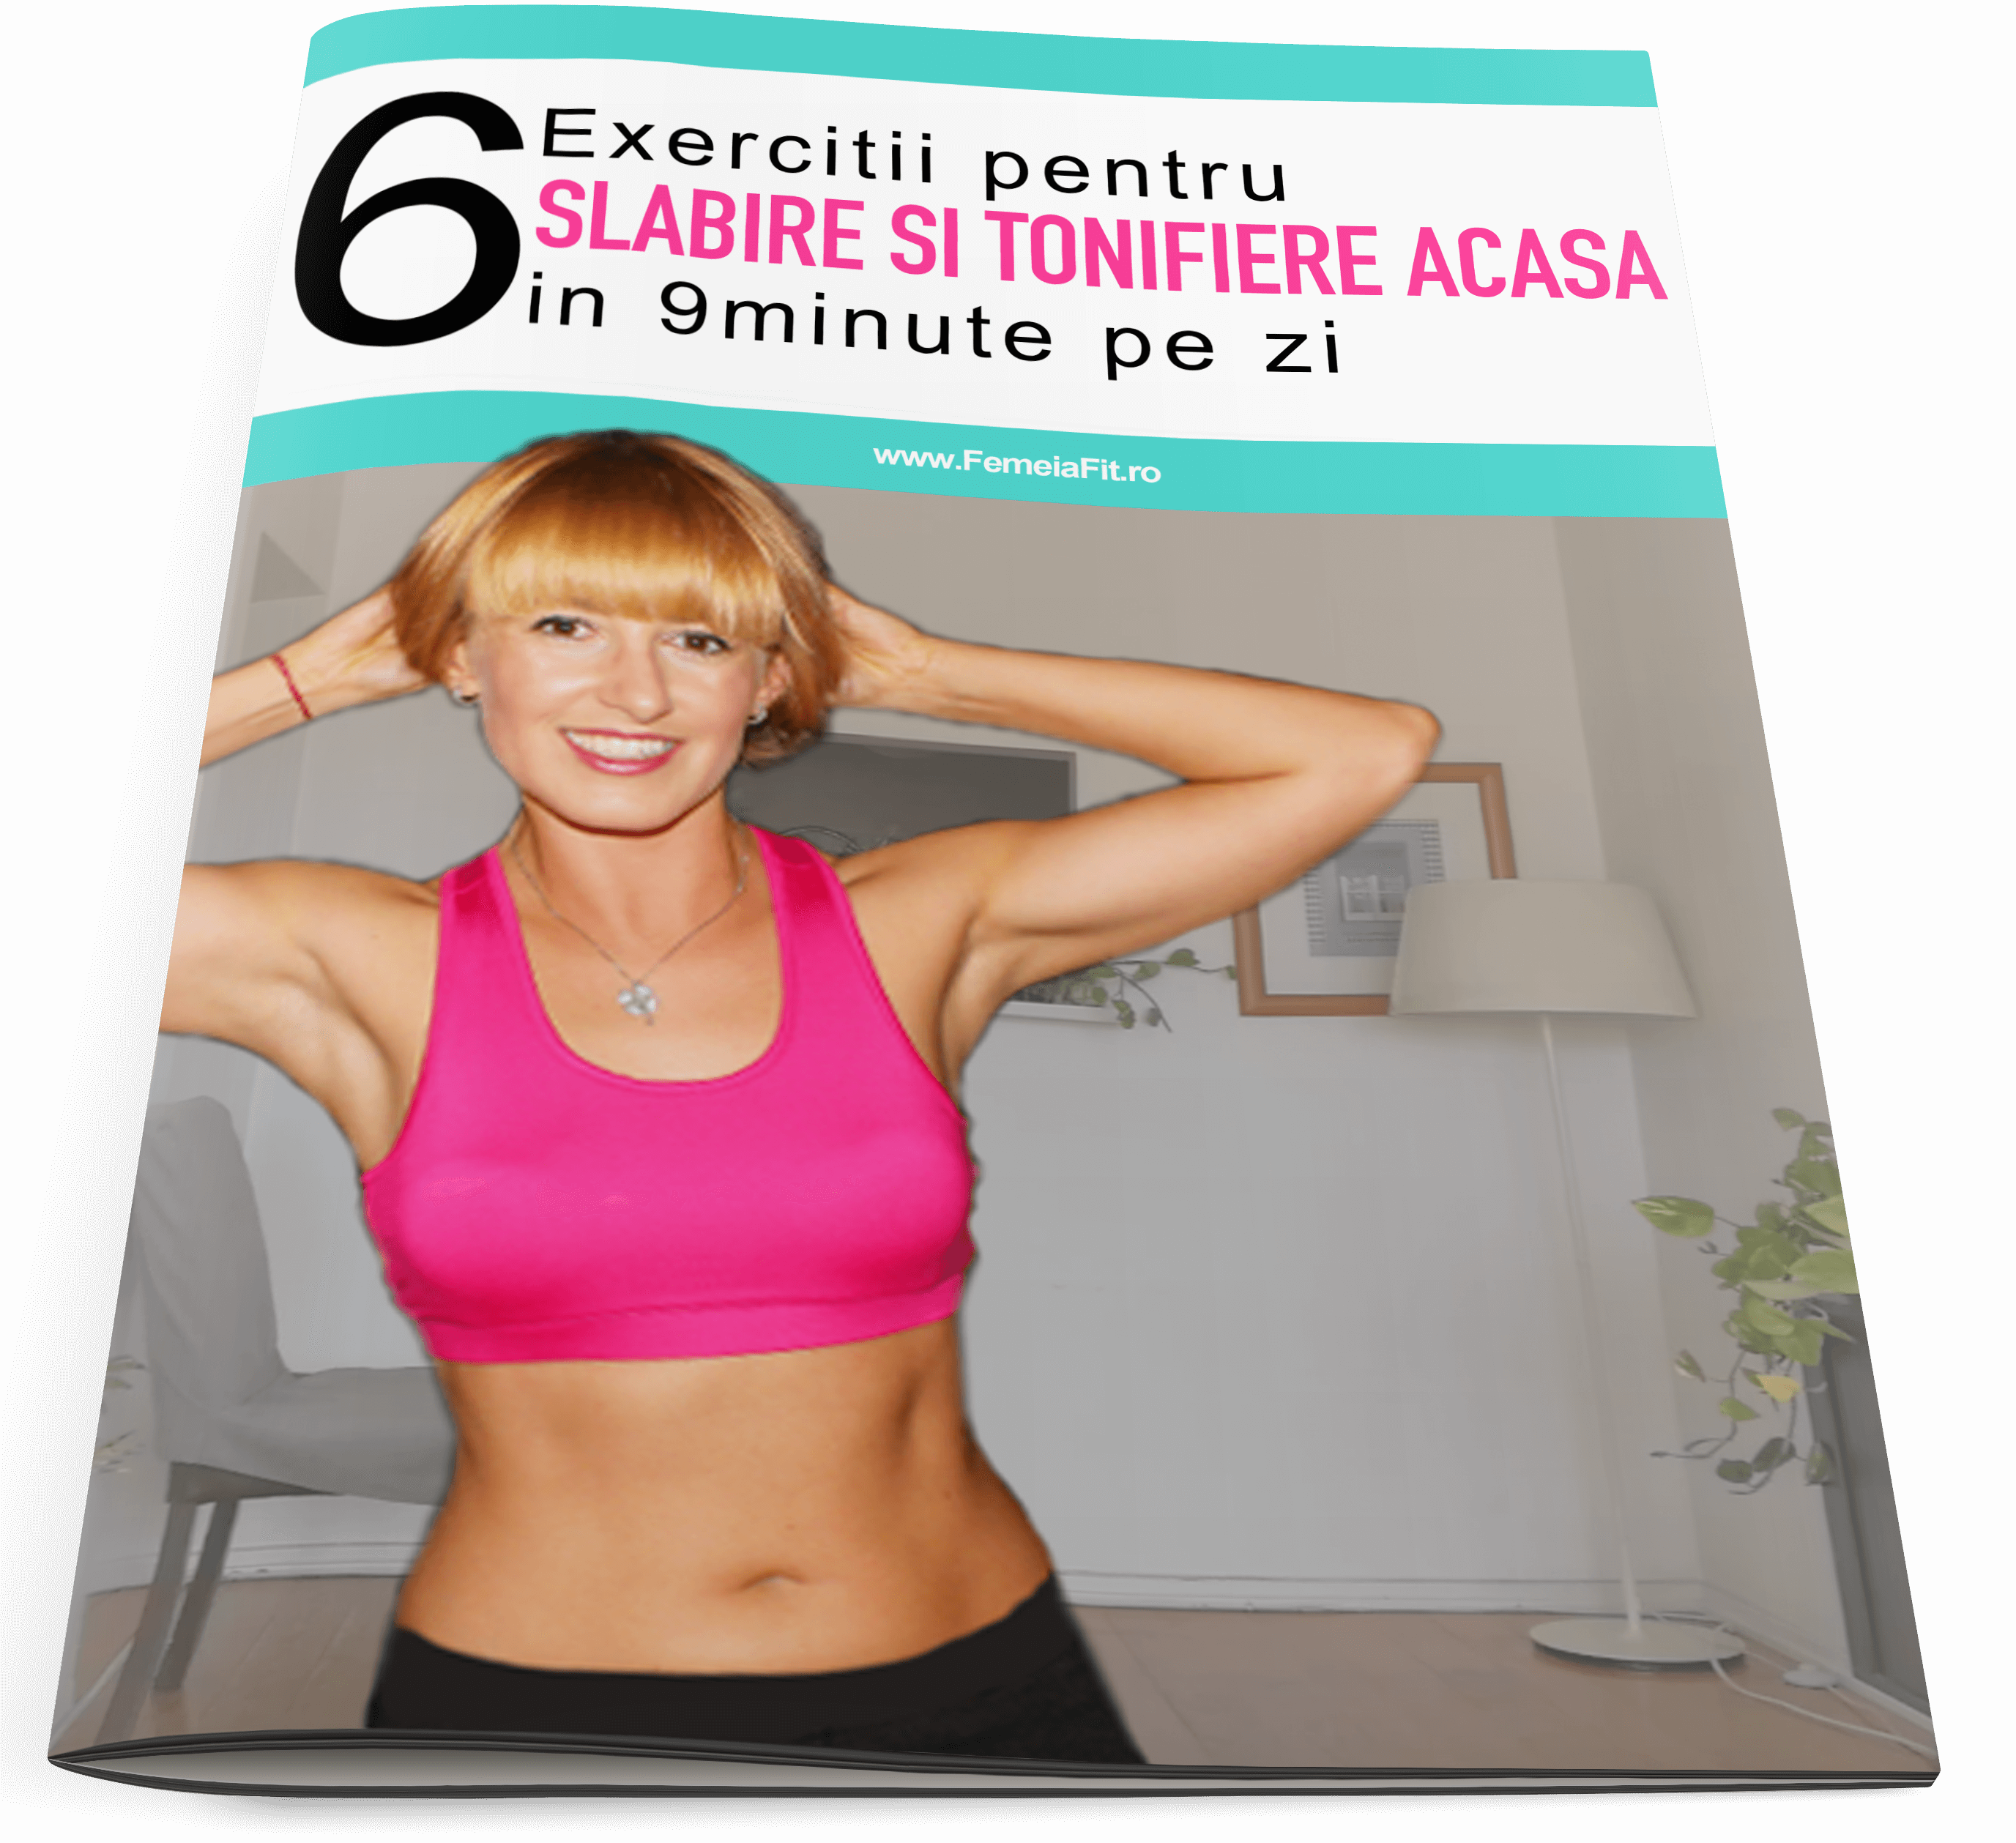 Exercitii de slabit: Antrenamentul de dimineata care face minuni